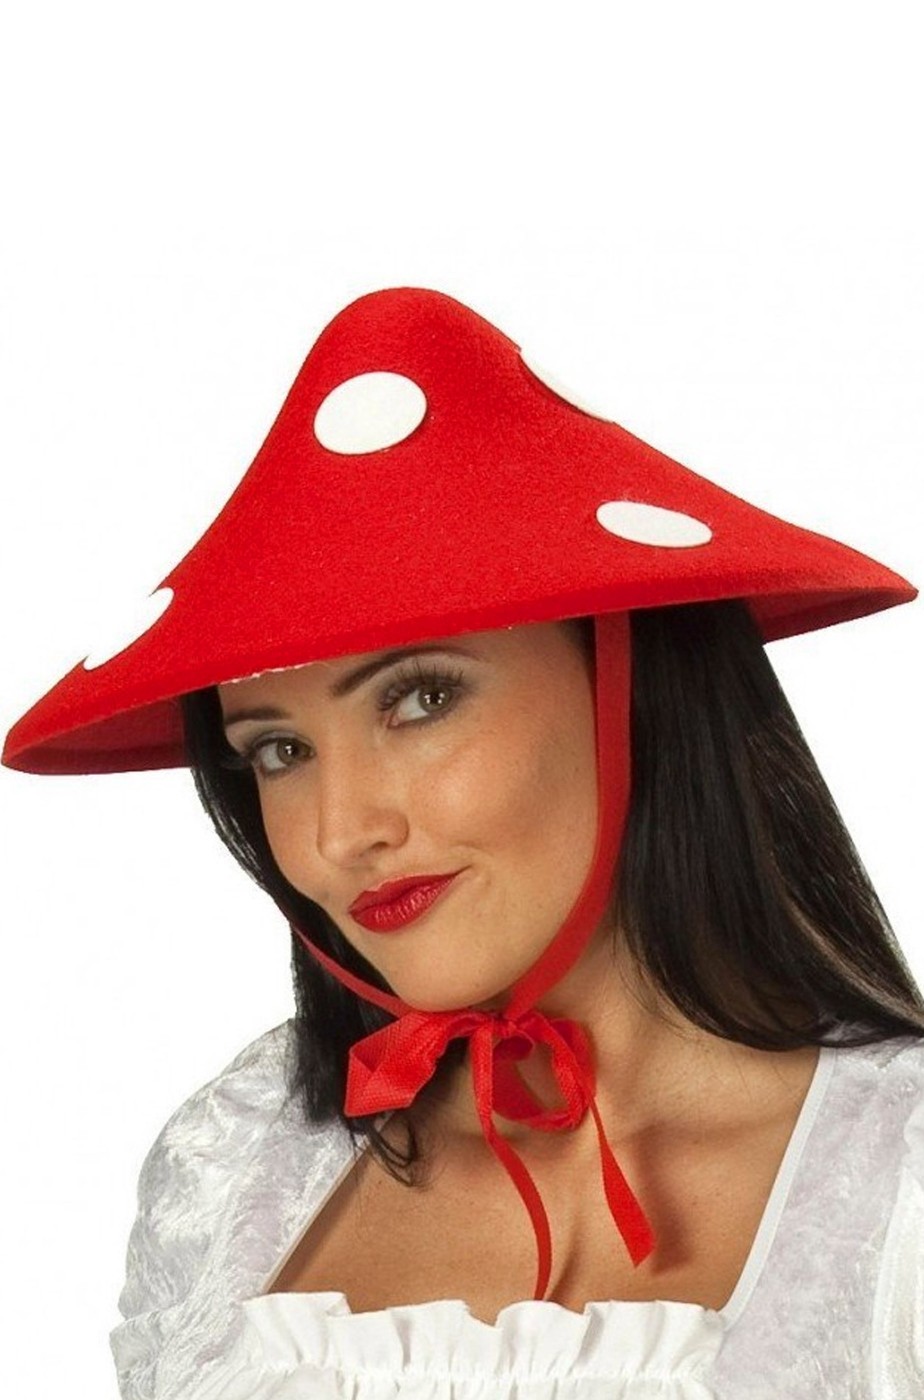 Cappello da fungo rigido rosso con pois bianchi amanita muscaria